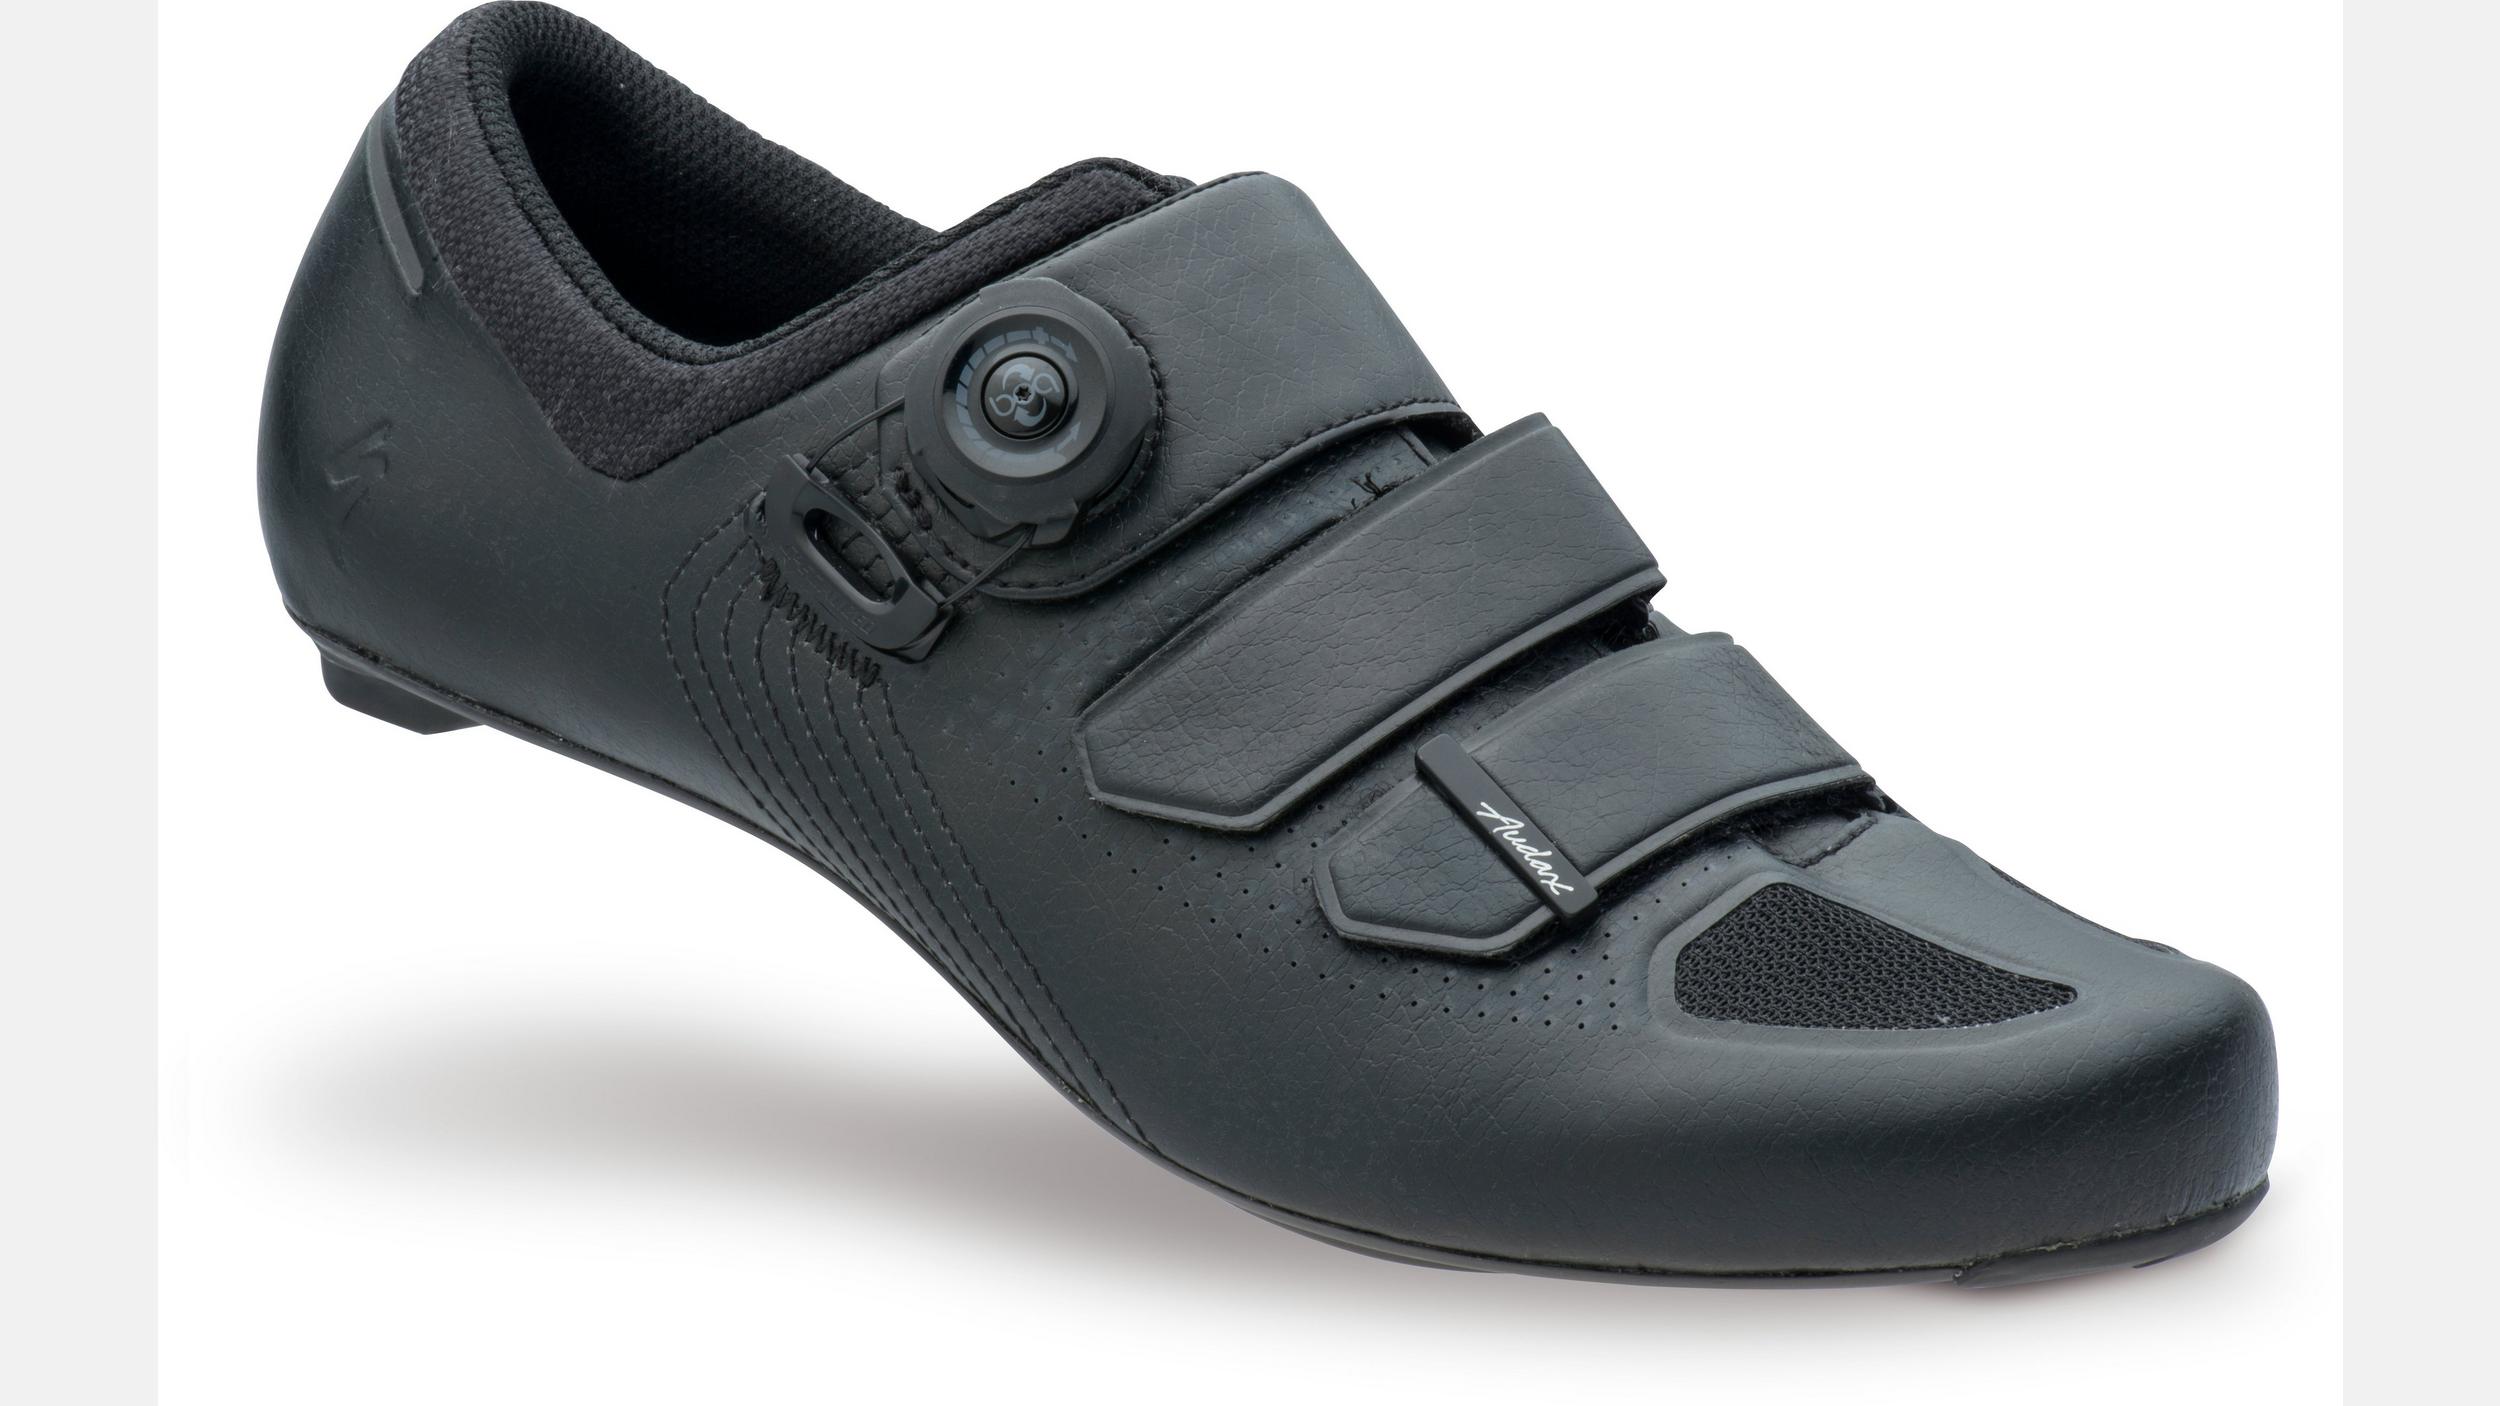 SPECIALIZED Audax Road FACT Carbon EU 48 US 13.75 Black Shoes MSRP $250 